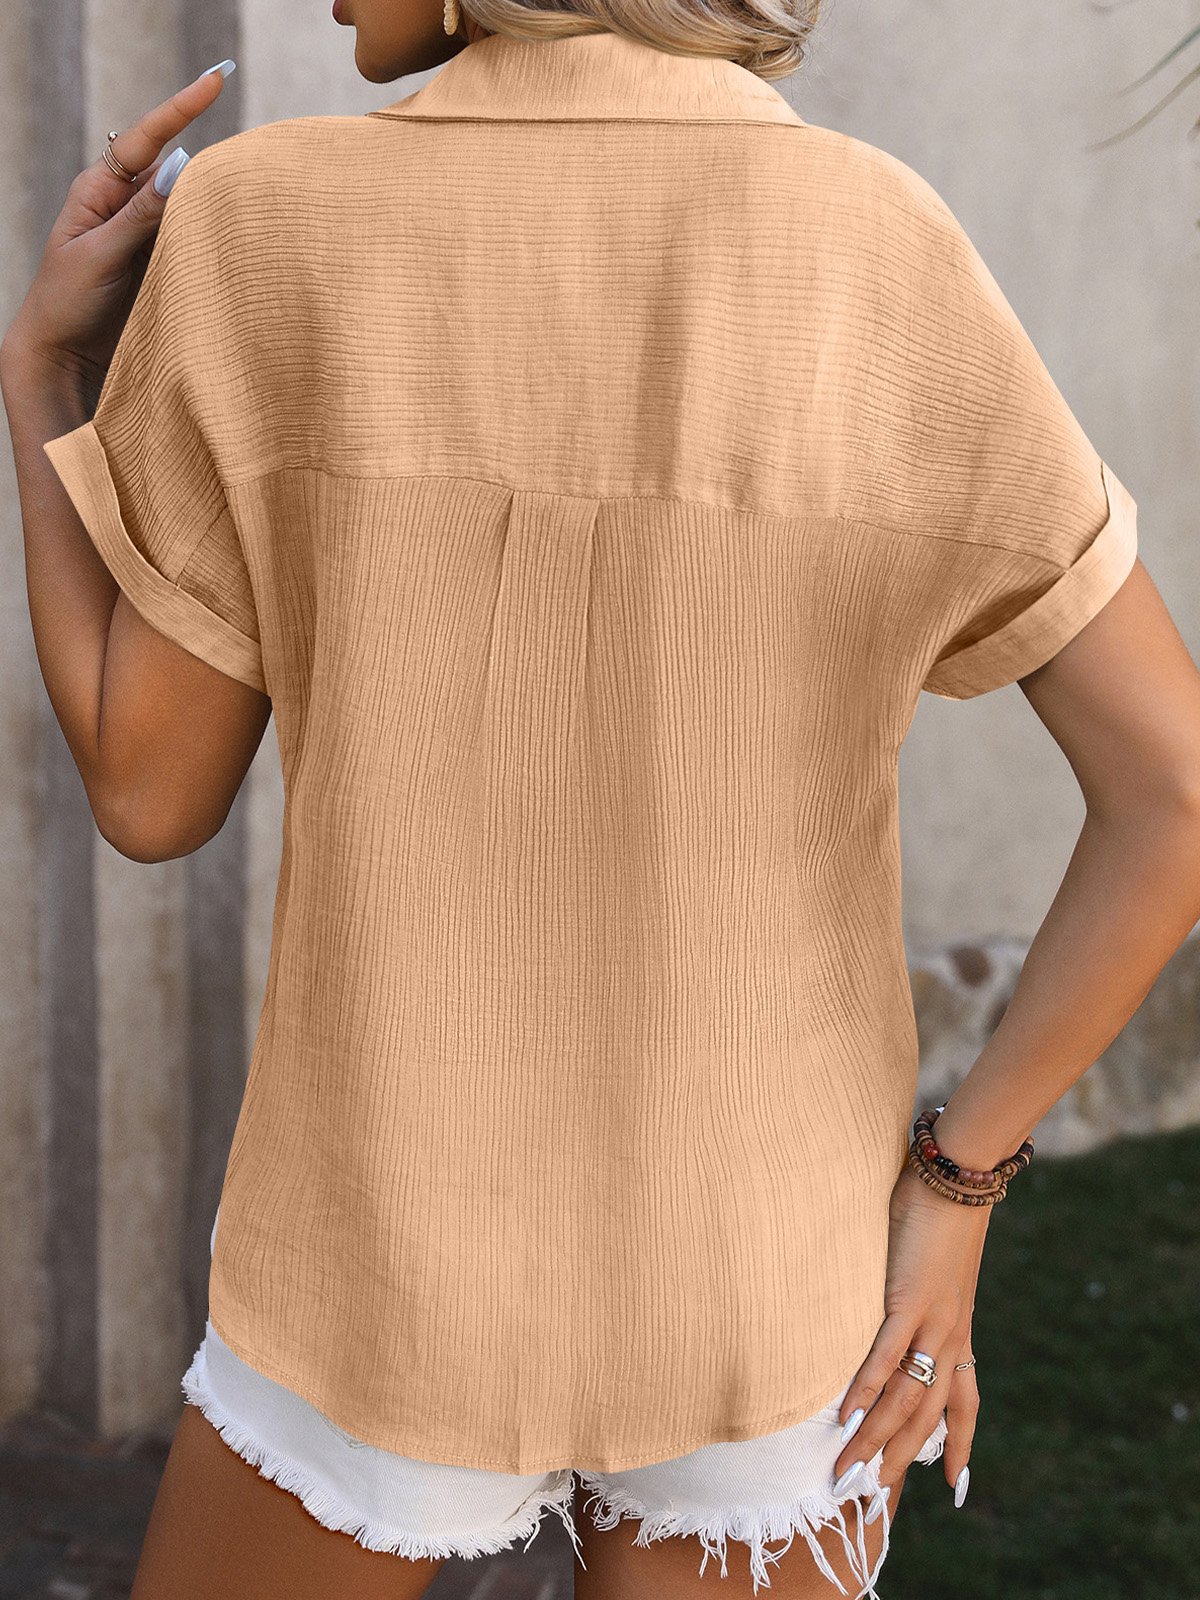 Hemdkragen Kurzarm Unifarben Regelmäßig Weit Bluse für Damen